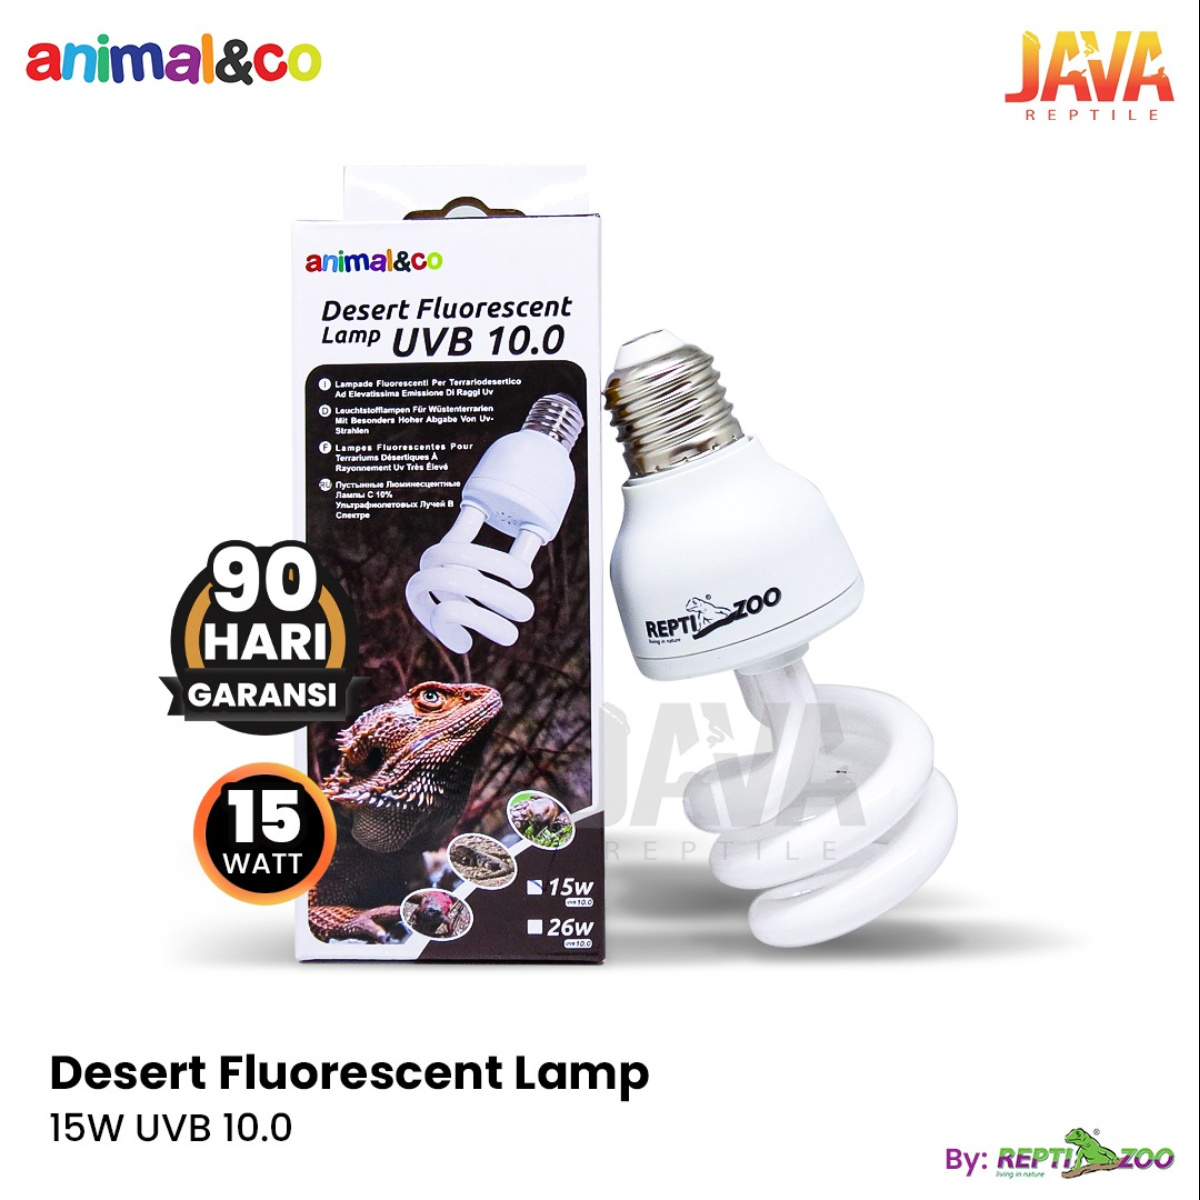 Animal&co Desert Fluorescent UVB 10.0 B*K*N Exoterra UVB - 15WATT